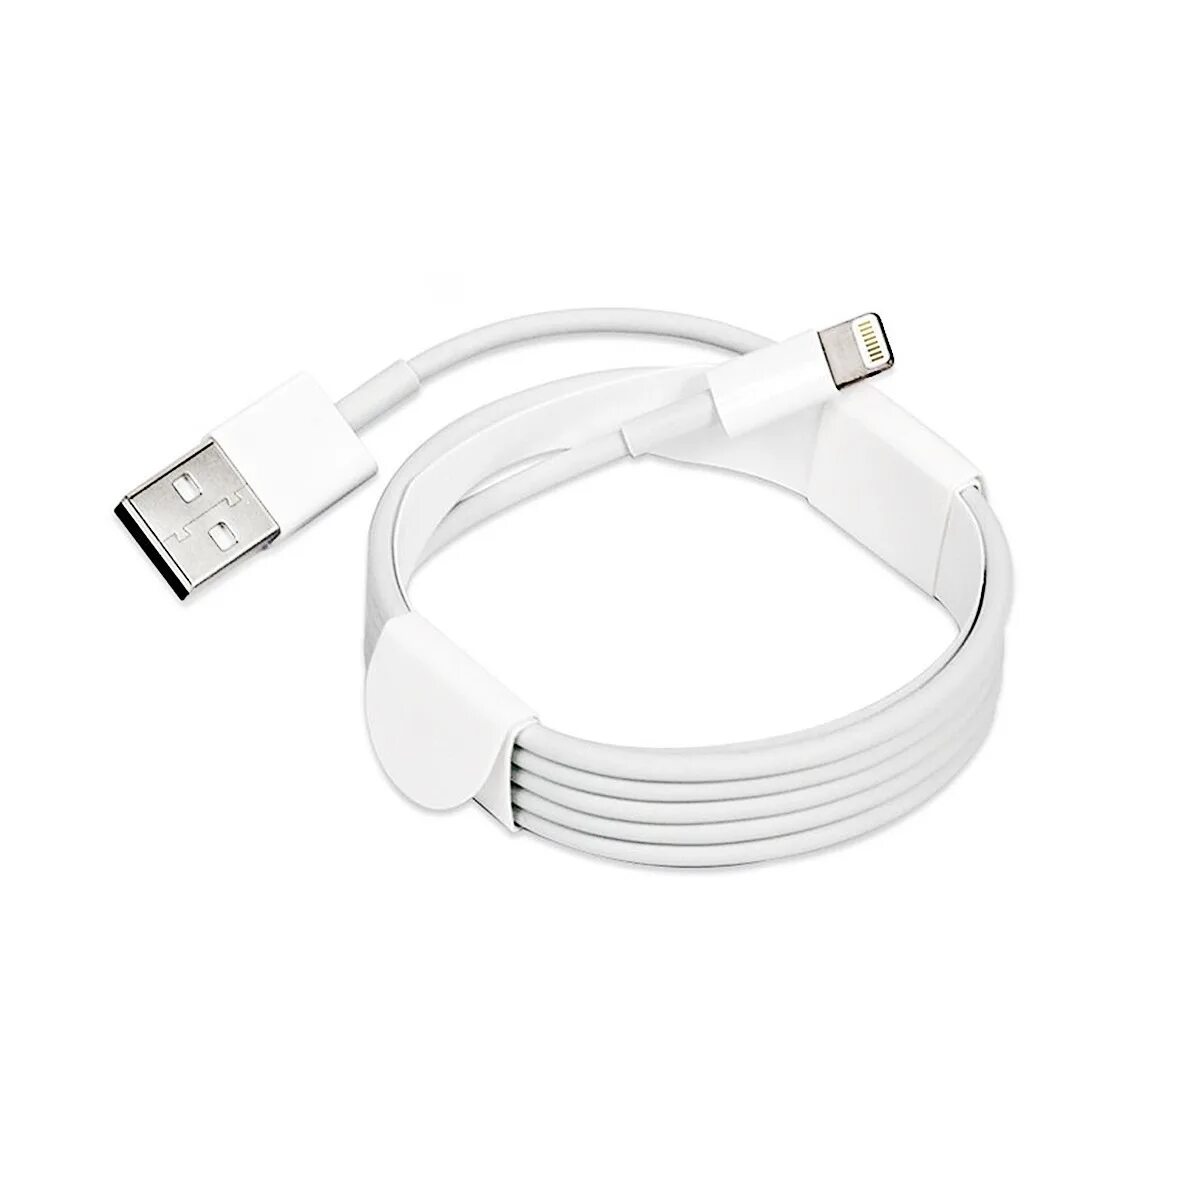 Apple кабель USB/Lightning 2 м. Кабель USB Lightning Foxconn. Шнур Лайтинг для айфона. USB кабель IPAD Mini оригинал. Кабель lightning купить оригинал